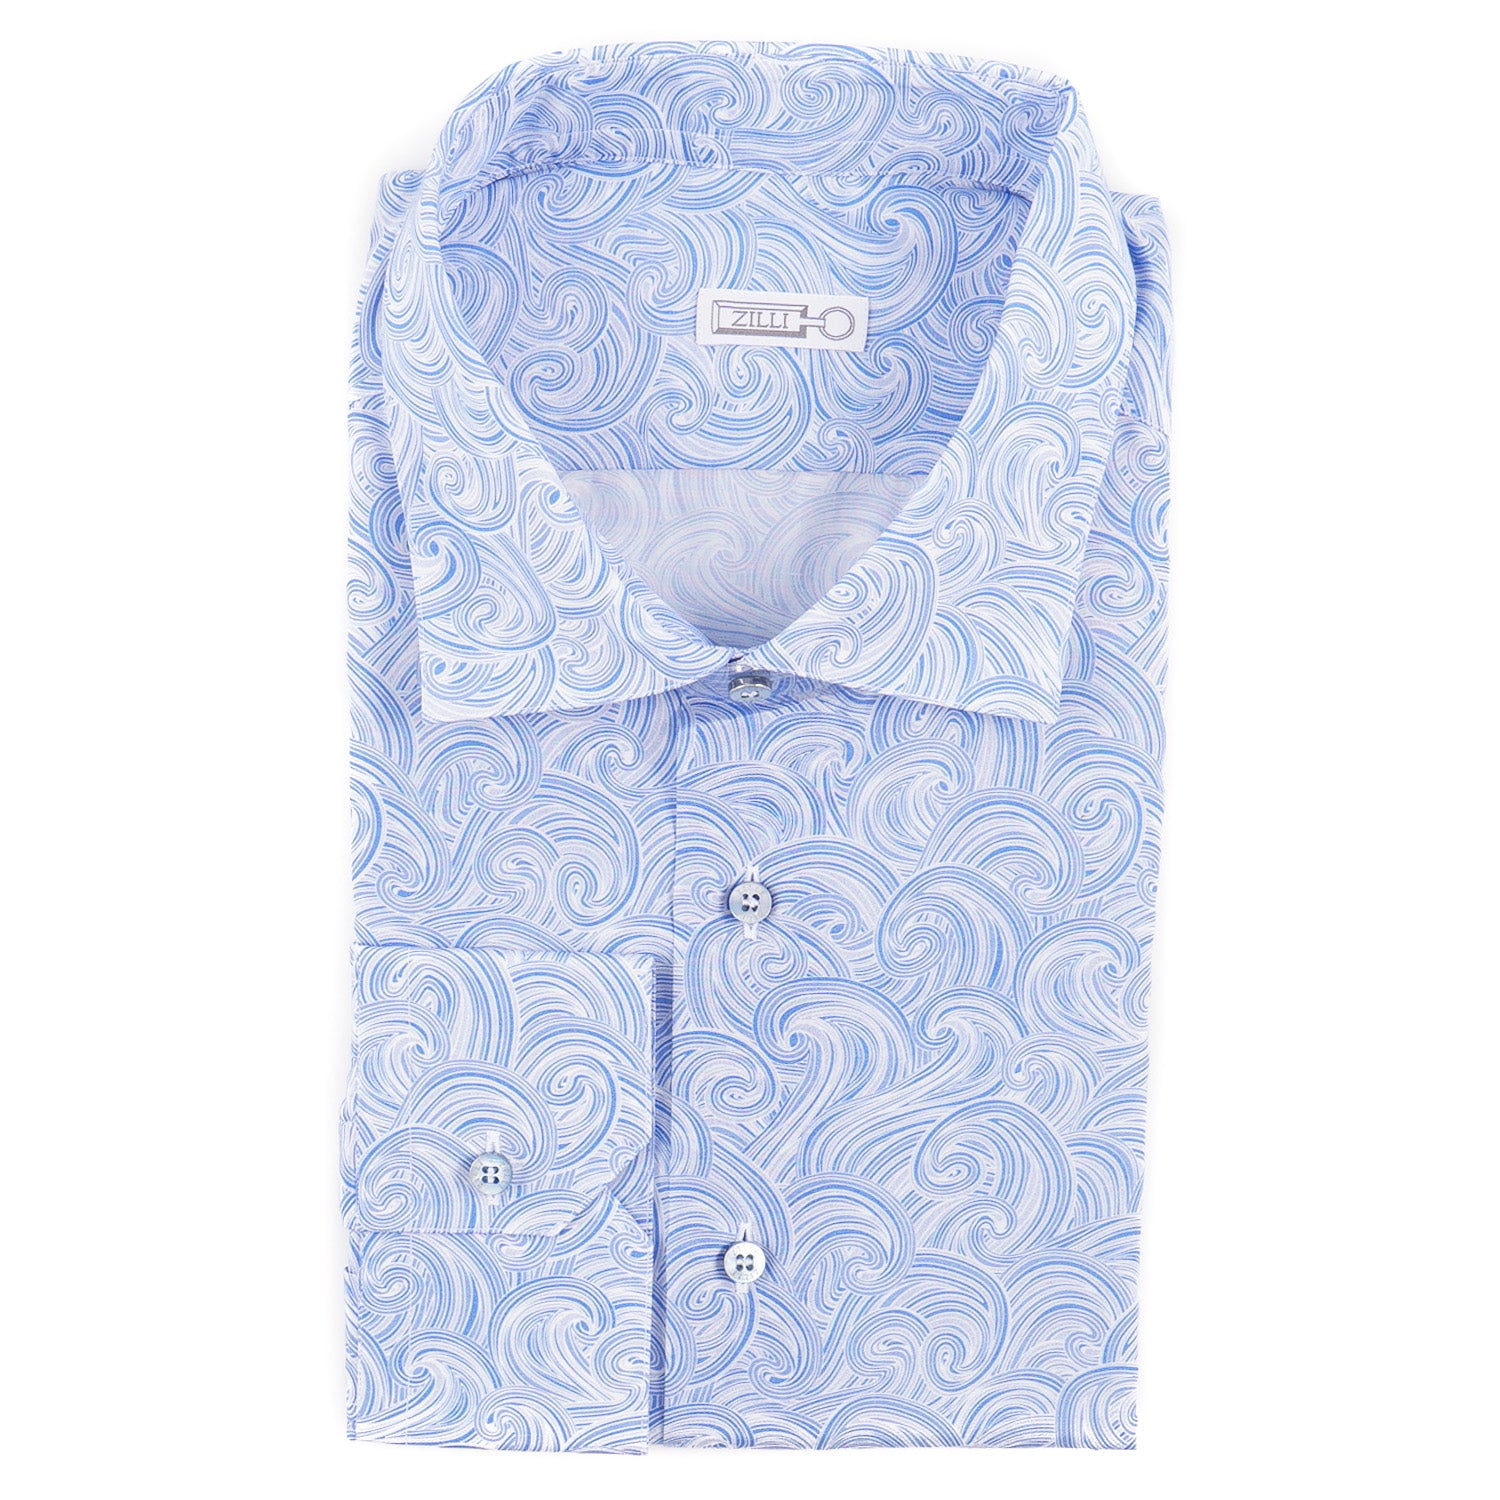 Zilli Lightweight Silk and Cotton Shirt - Top Shelf Apparel